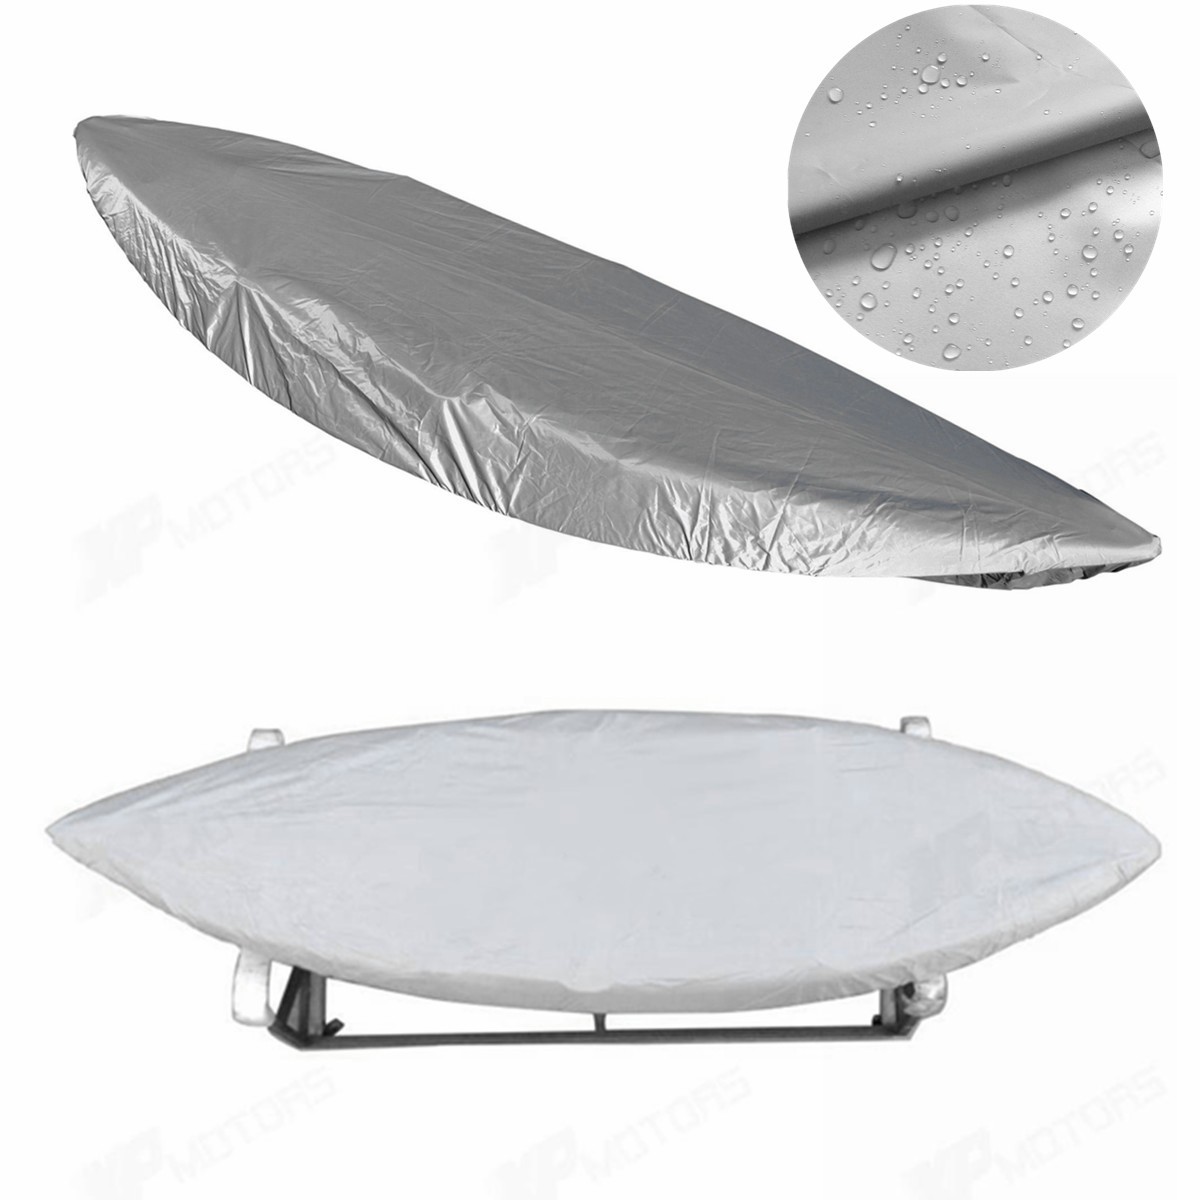 

ZANLURE Серебро Водонепроницаемы UV Защита от солнца 3.8-4.1M Kayak Лодка Крышка для хранения каноэ